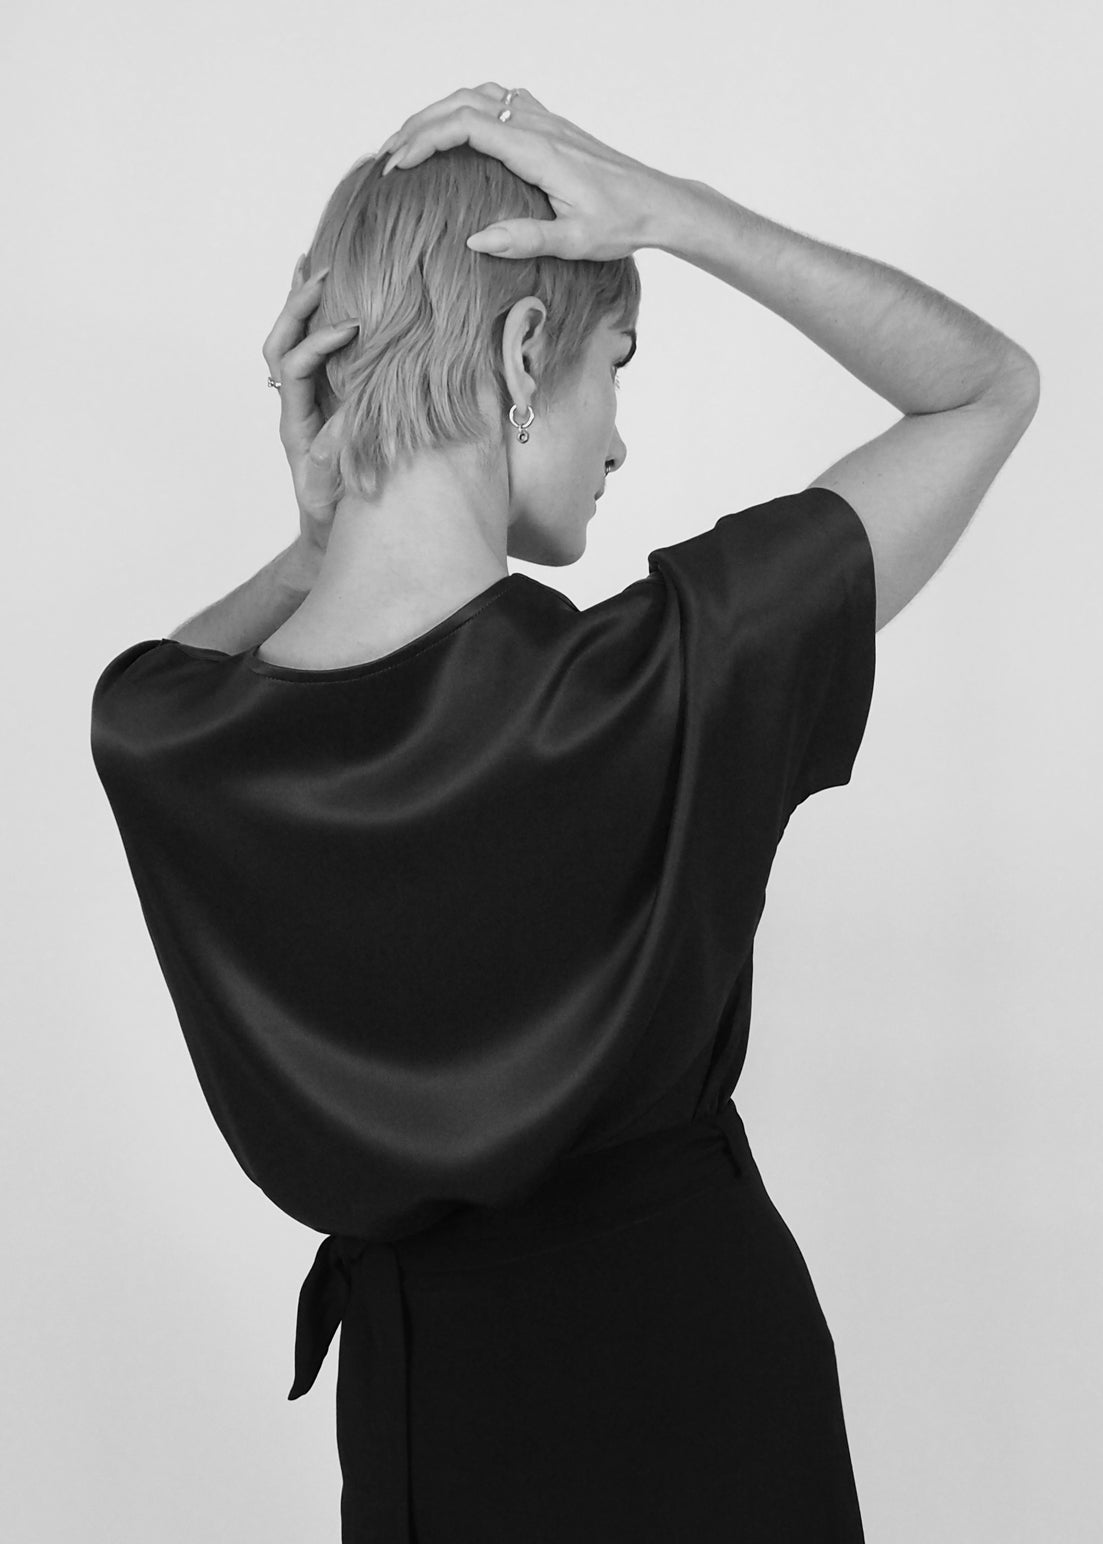 V-Neck Short Sleeve Top in Black with Transparent Back "Lille"